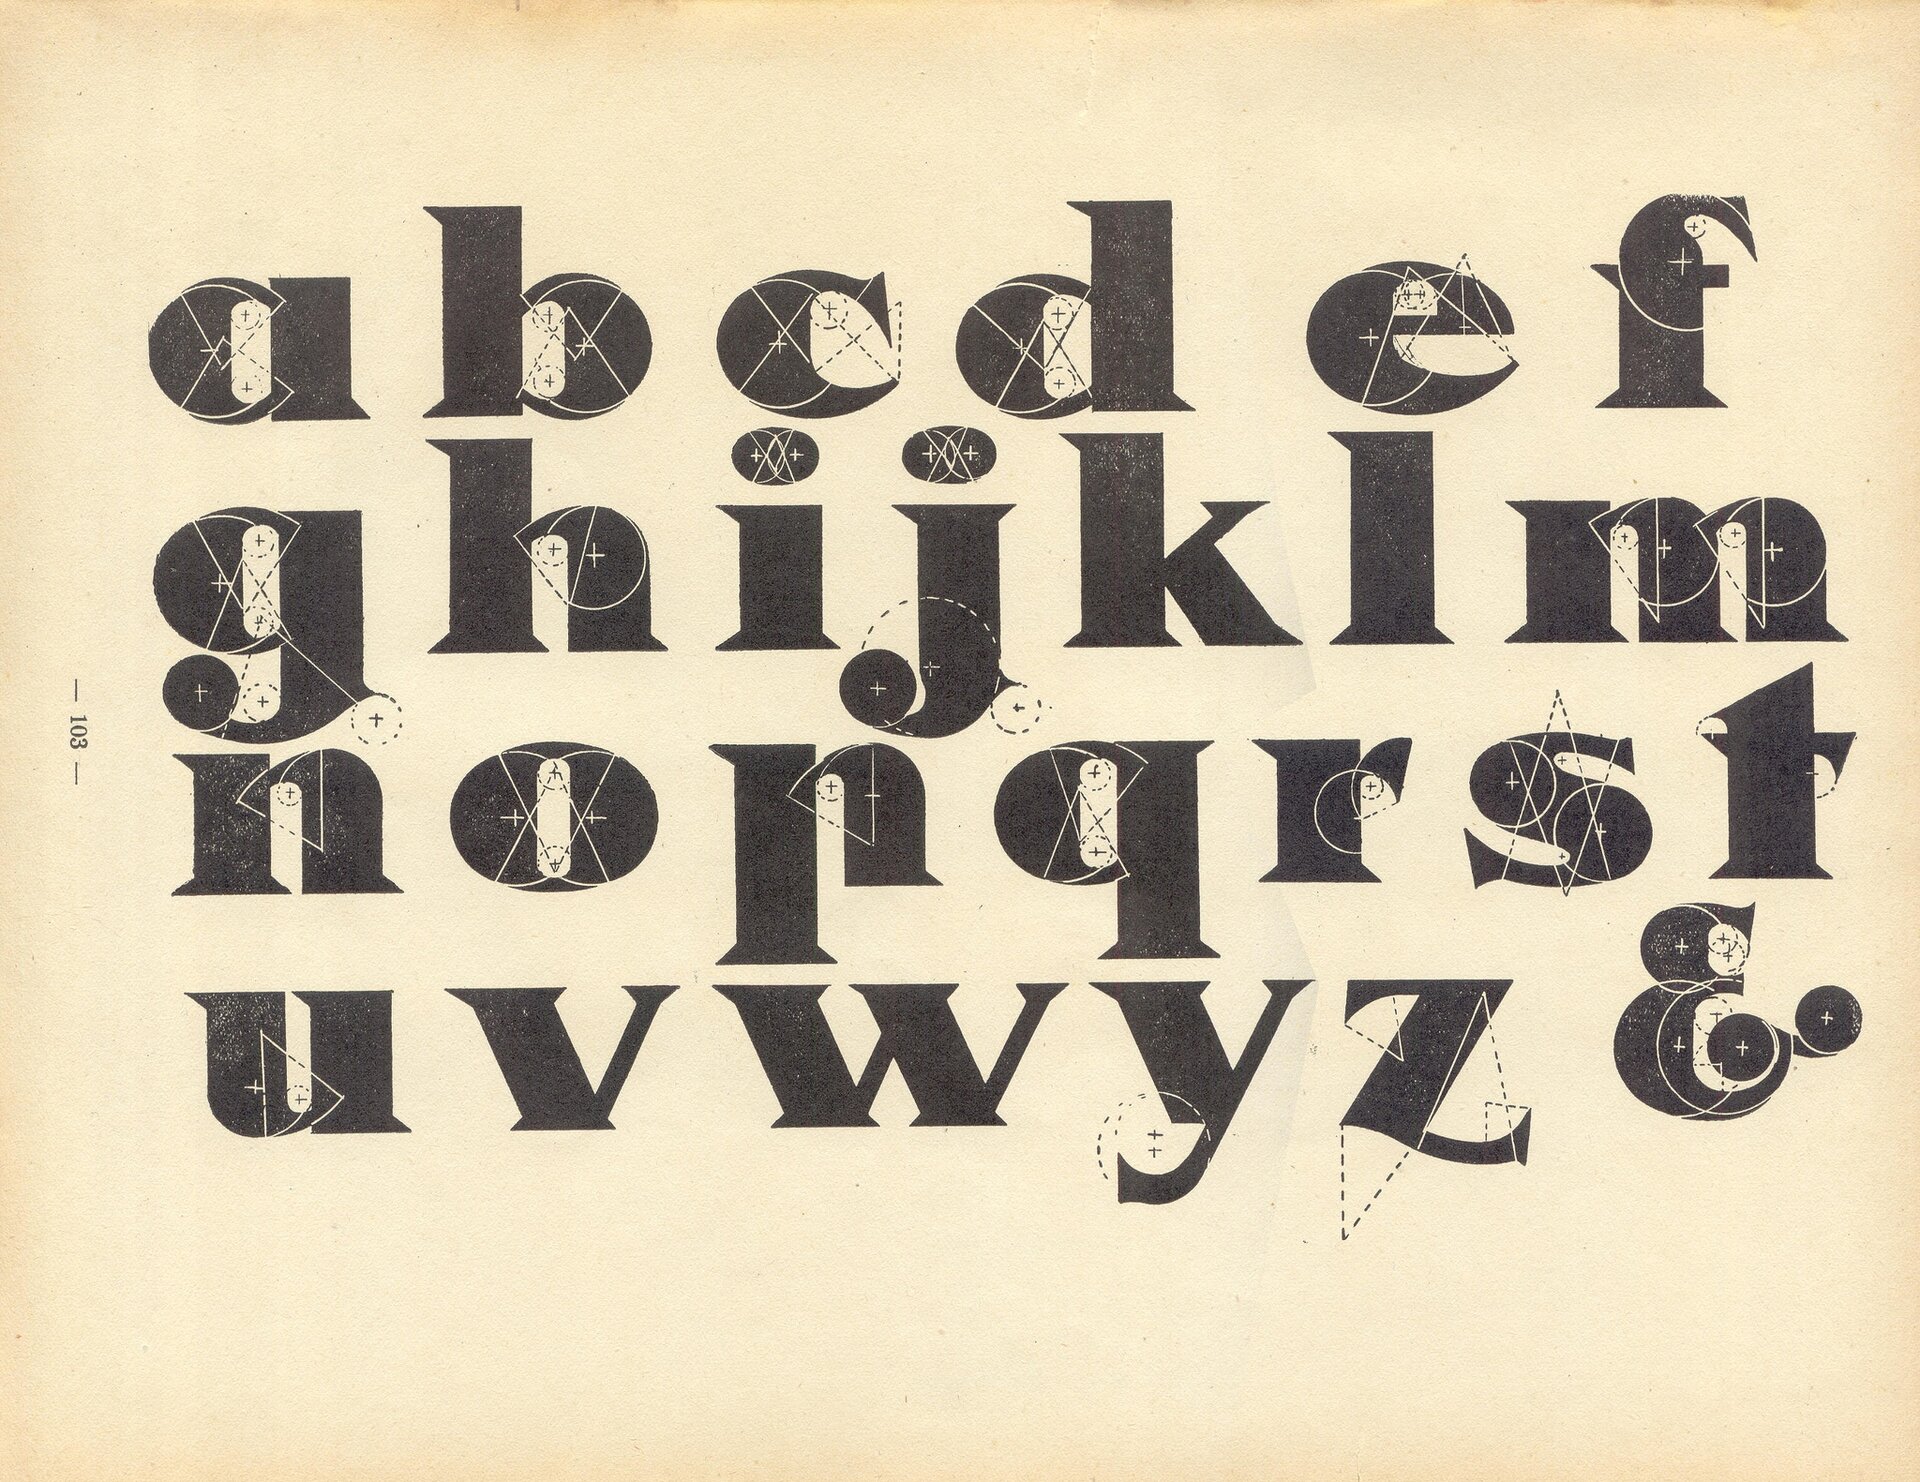 Ilustracja przedstawia pisany minuskułą alfabet. Czcionka jest szeroka, dwuelementowa - jedna część wąska, druga szeroka. Litery ozdobione są ostrymi szeryfami.